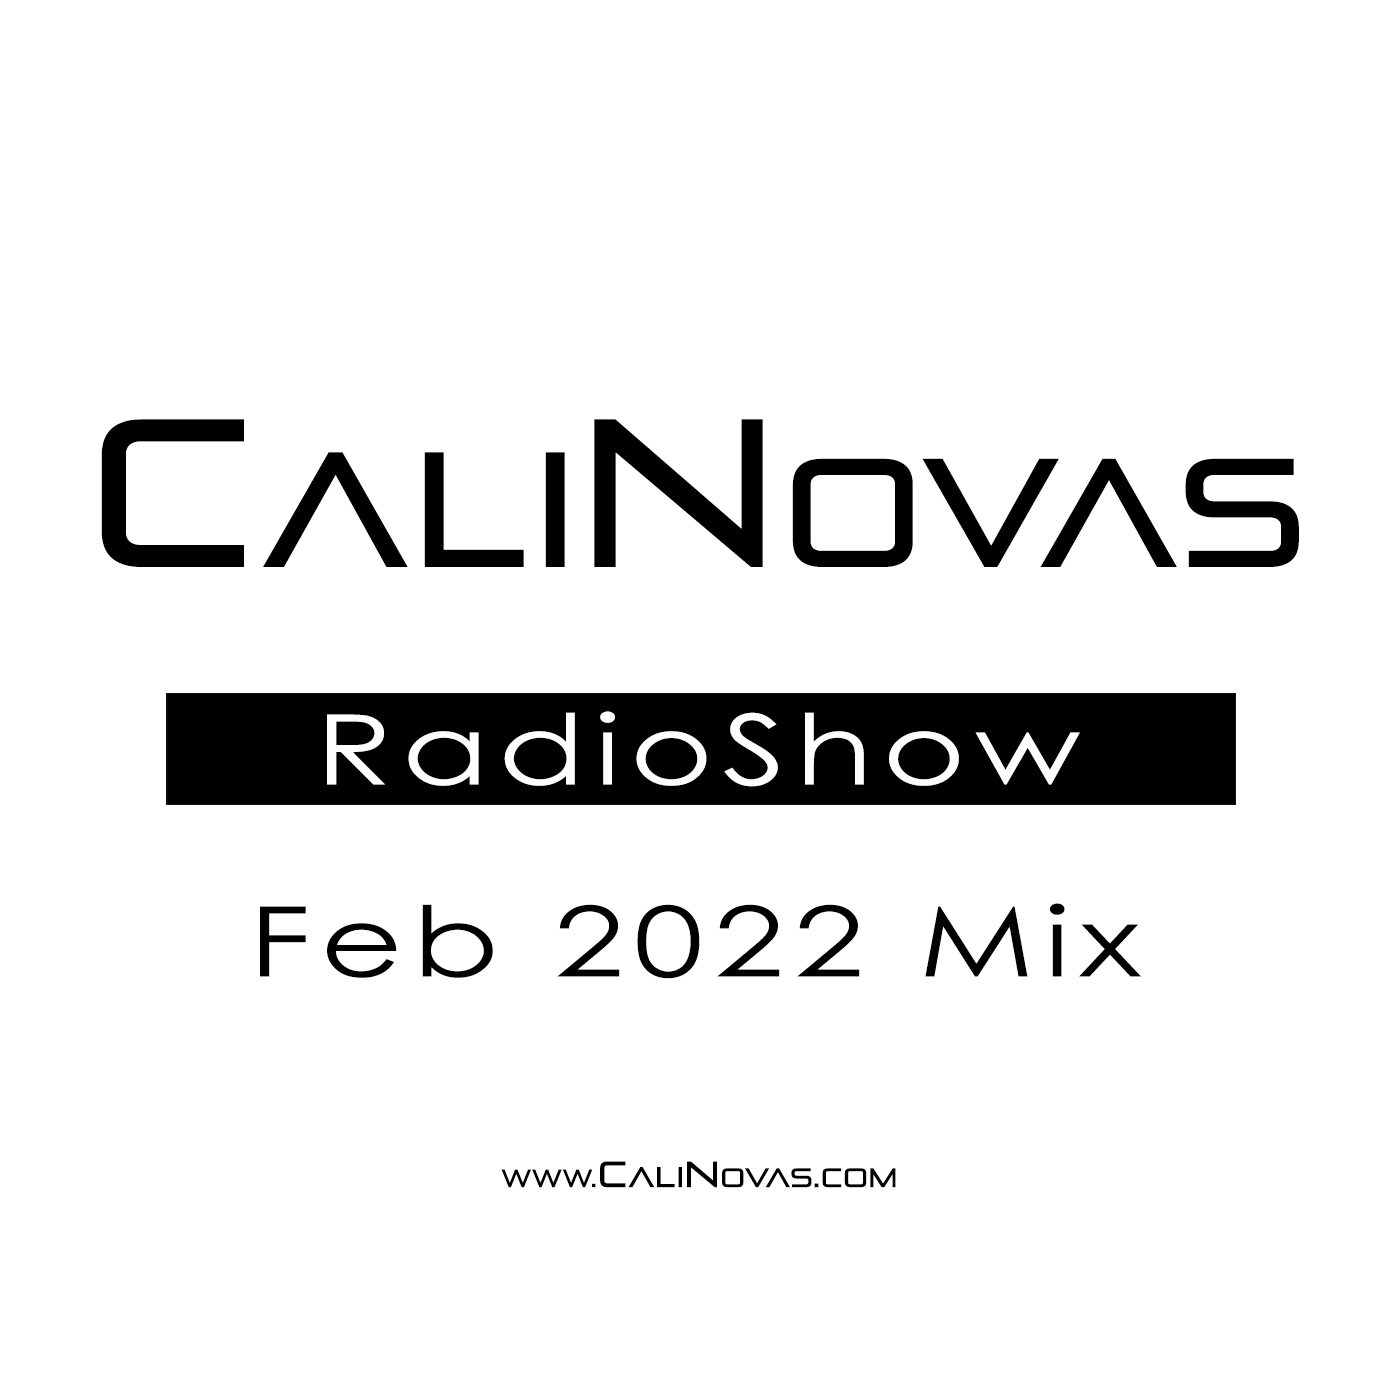 CaliNovas Radio Show - February 2022 Mix